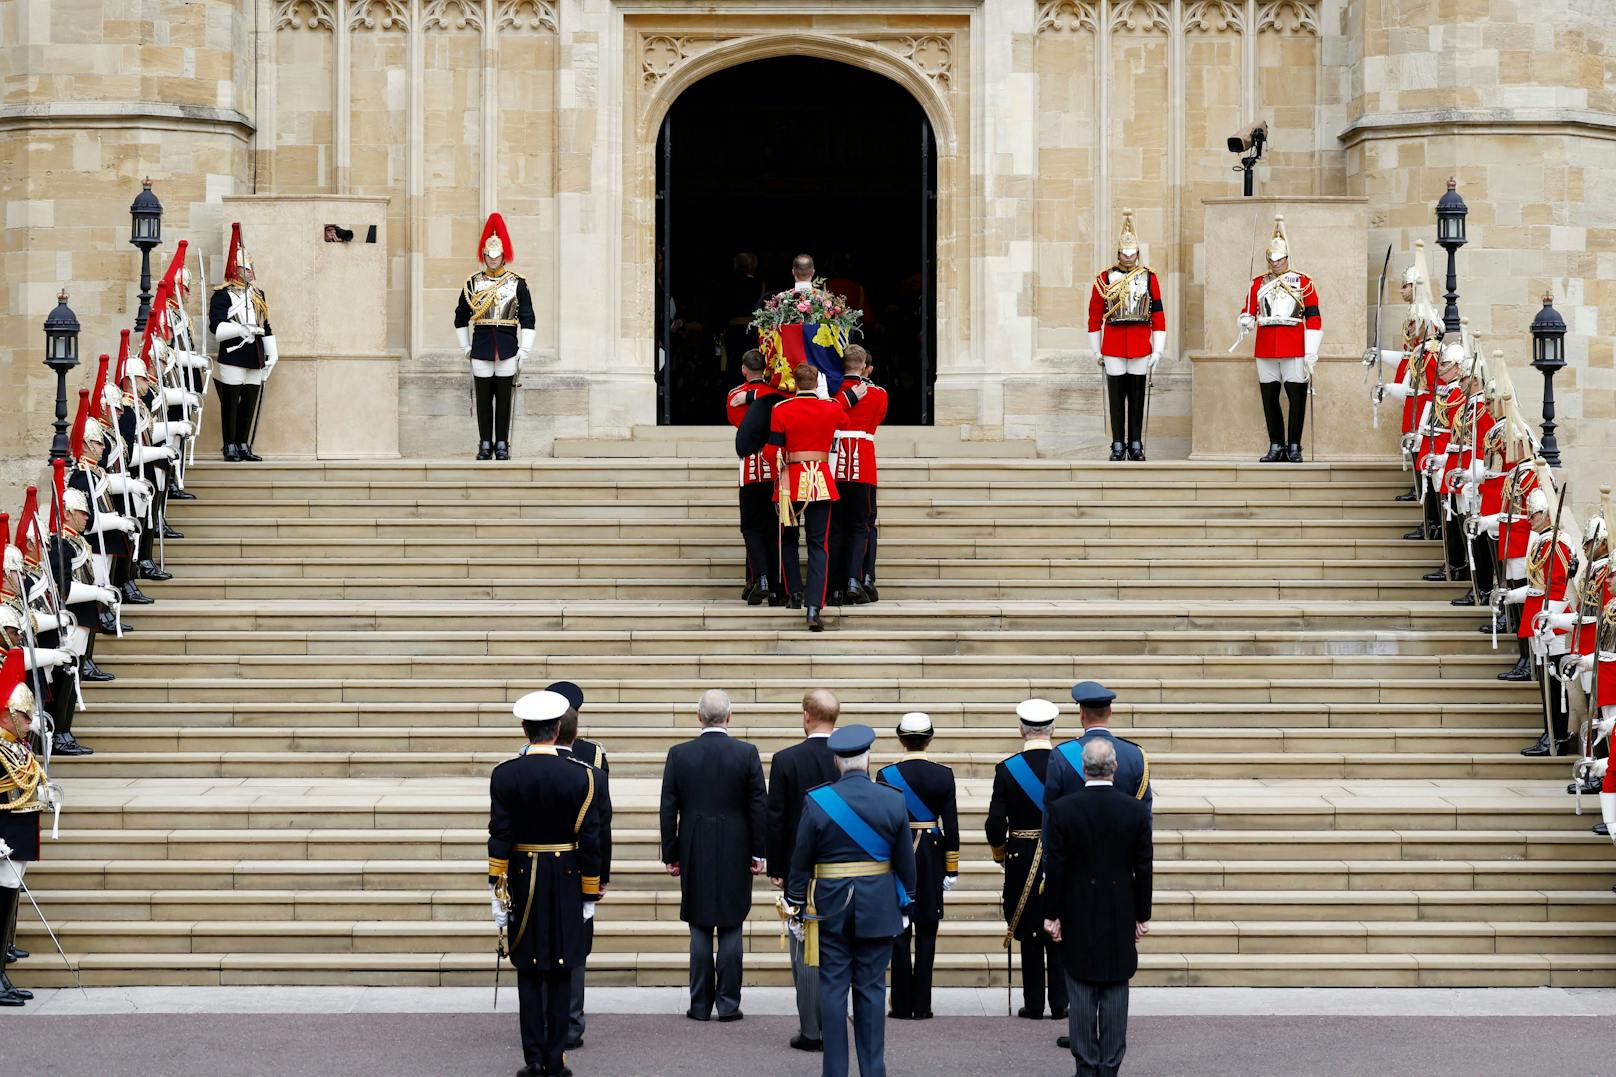 Sargträger tragen den Sarg von Königin Elizabeth II. mit der Imperial State Crown, die oben ruht, in die St. George's Chapel am 19. September 2022 in Windsor.